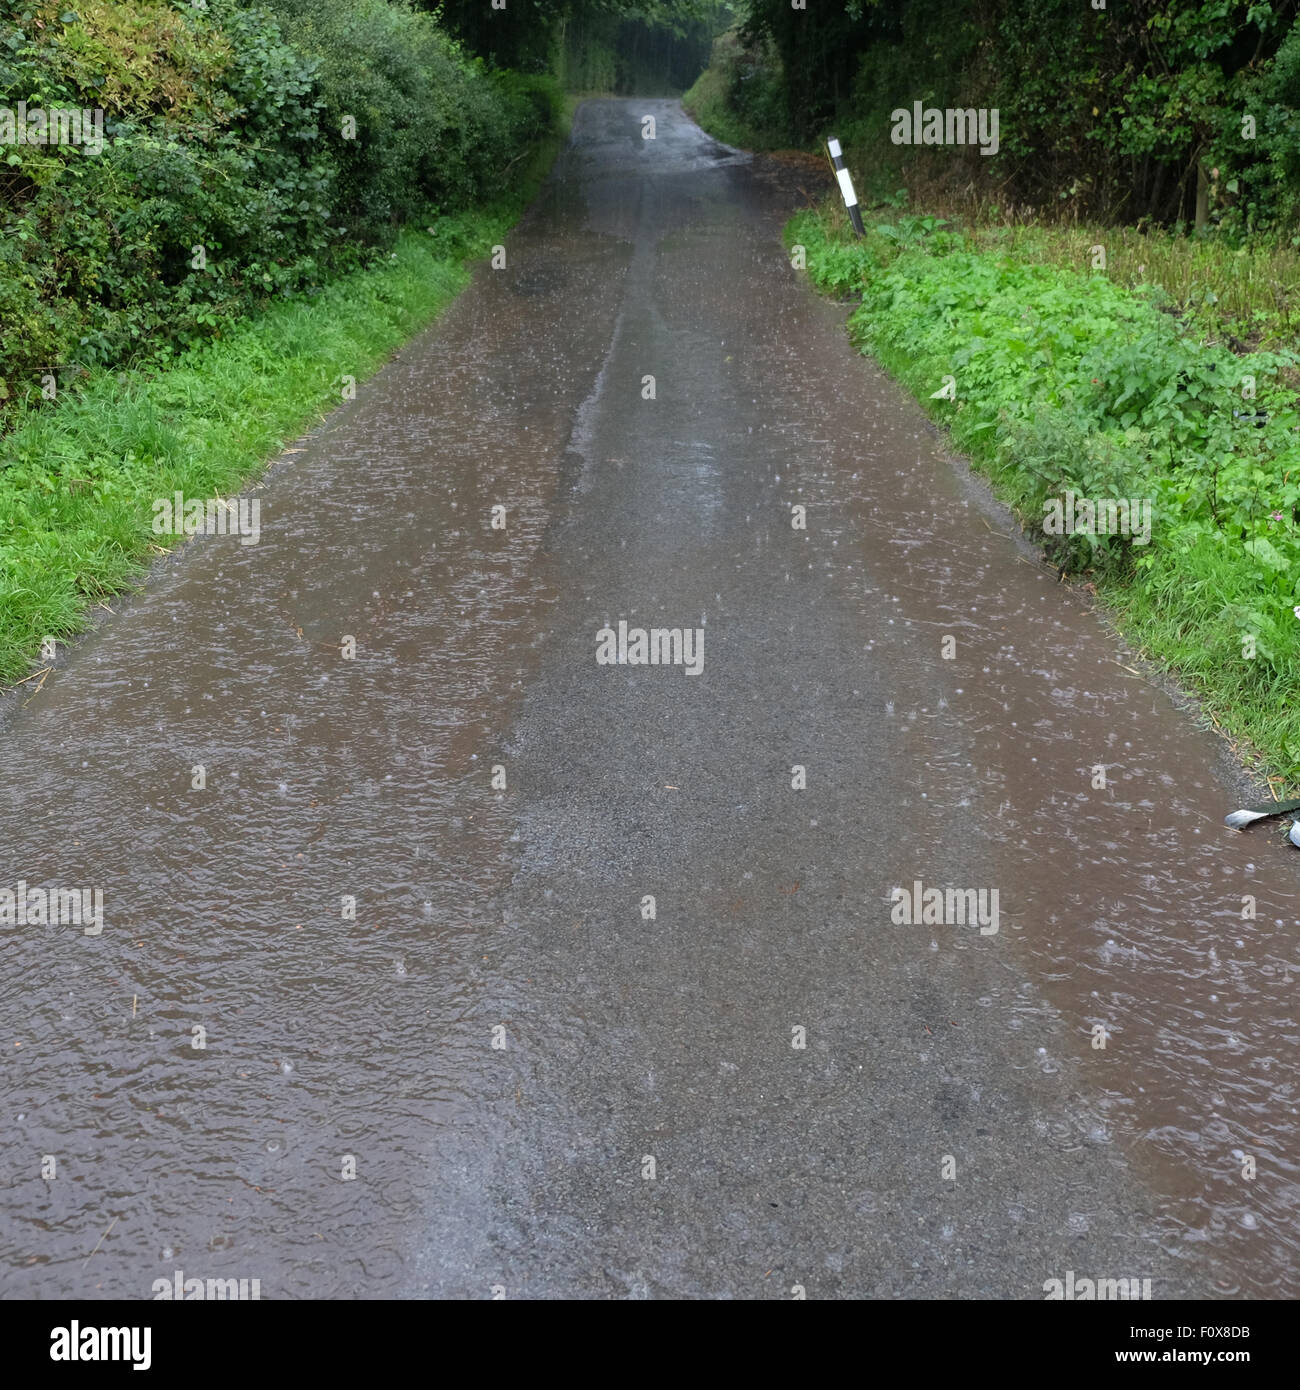 Herefordshire UK. 22. August 2015. Nach einem sehr heißen und feuchten Wetter herabgebracht ein Sommergewitter sintflutartigen Regen am Titley Herefordshire am 18:15 verursacht Überschwemmungen auf viele Feldwege, die Kanalisation fehlt. Stockfoto